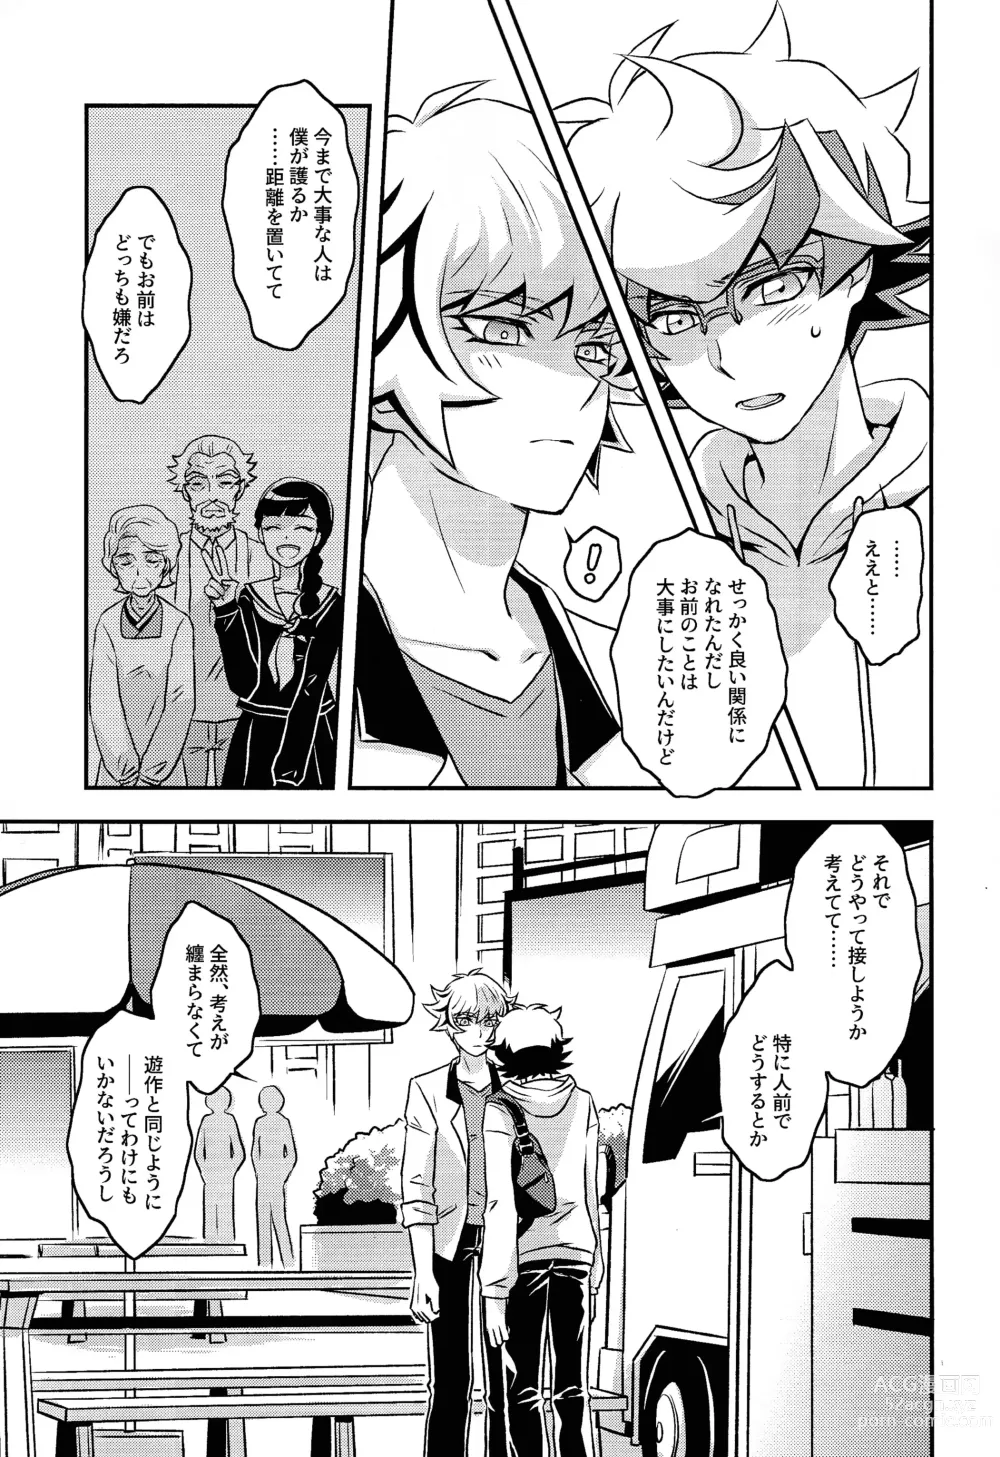 Page 6 of doujinshi Kettou de Kiite Miro - Ask in a duel